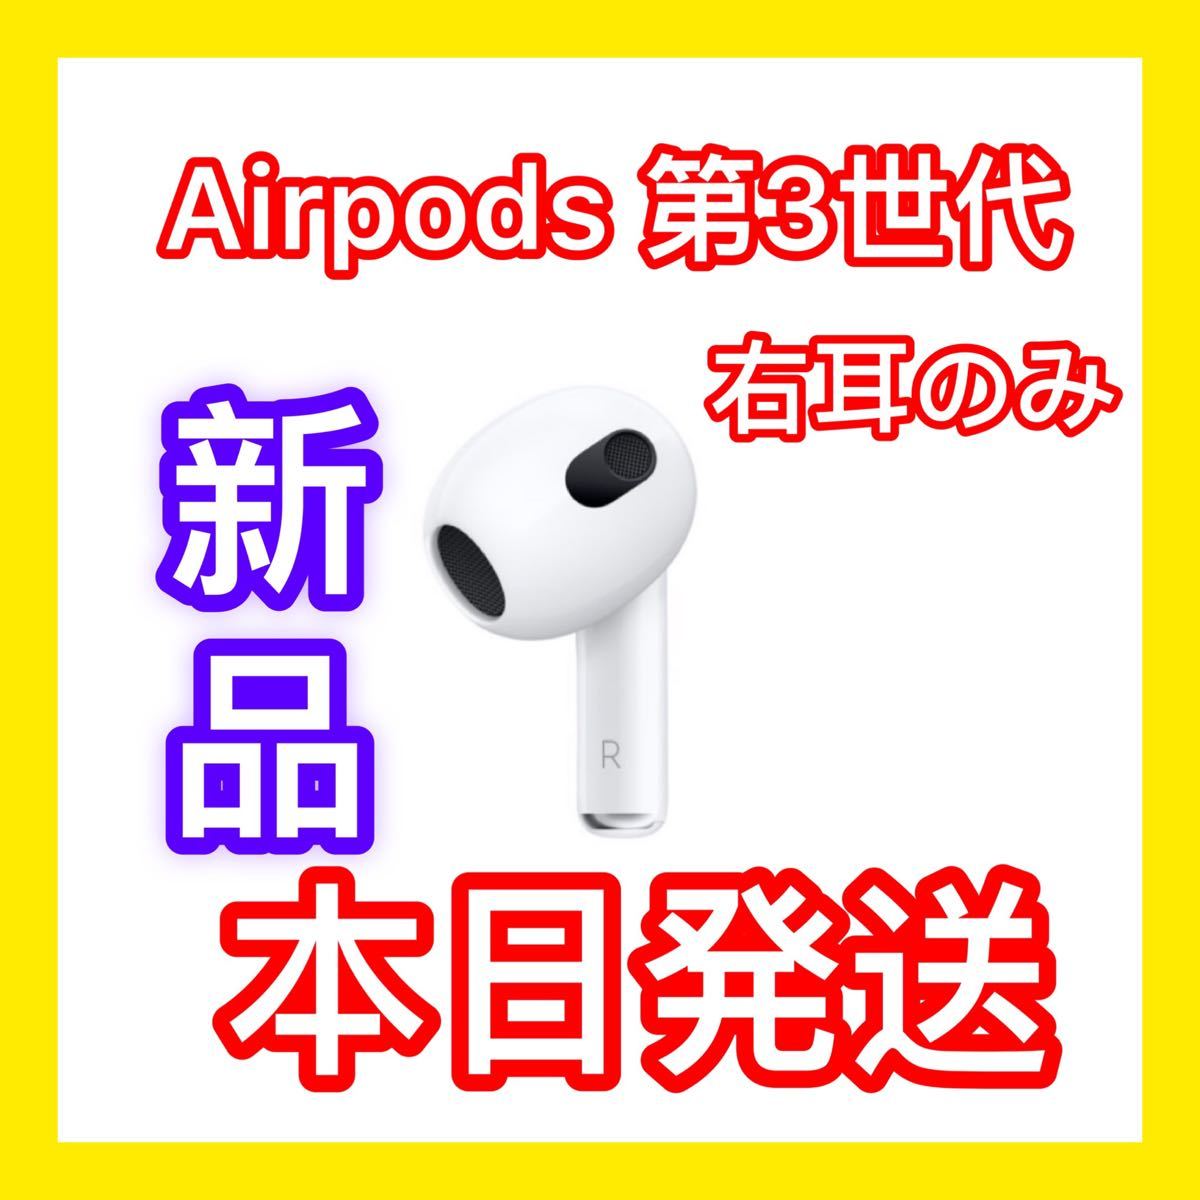 全日本送料無料 エアーポッズ 第3世代右耳のみ第三世代AirPods R片耳 